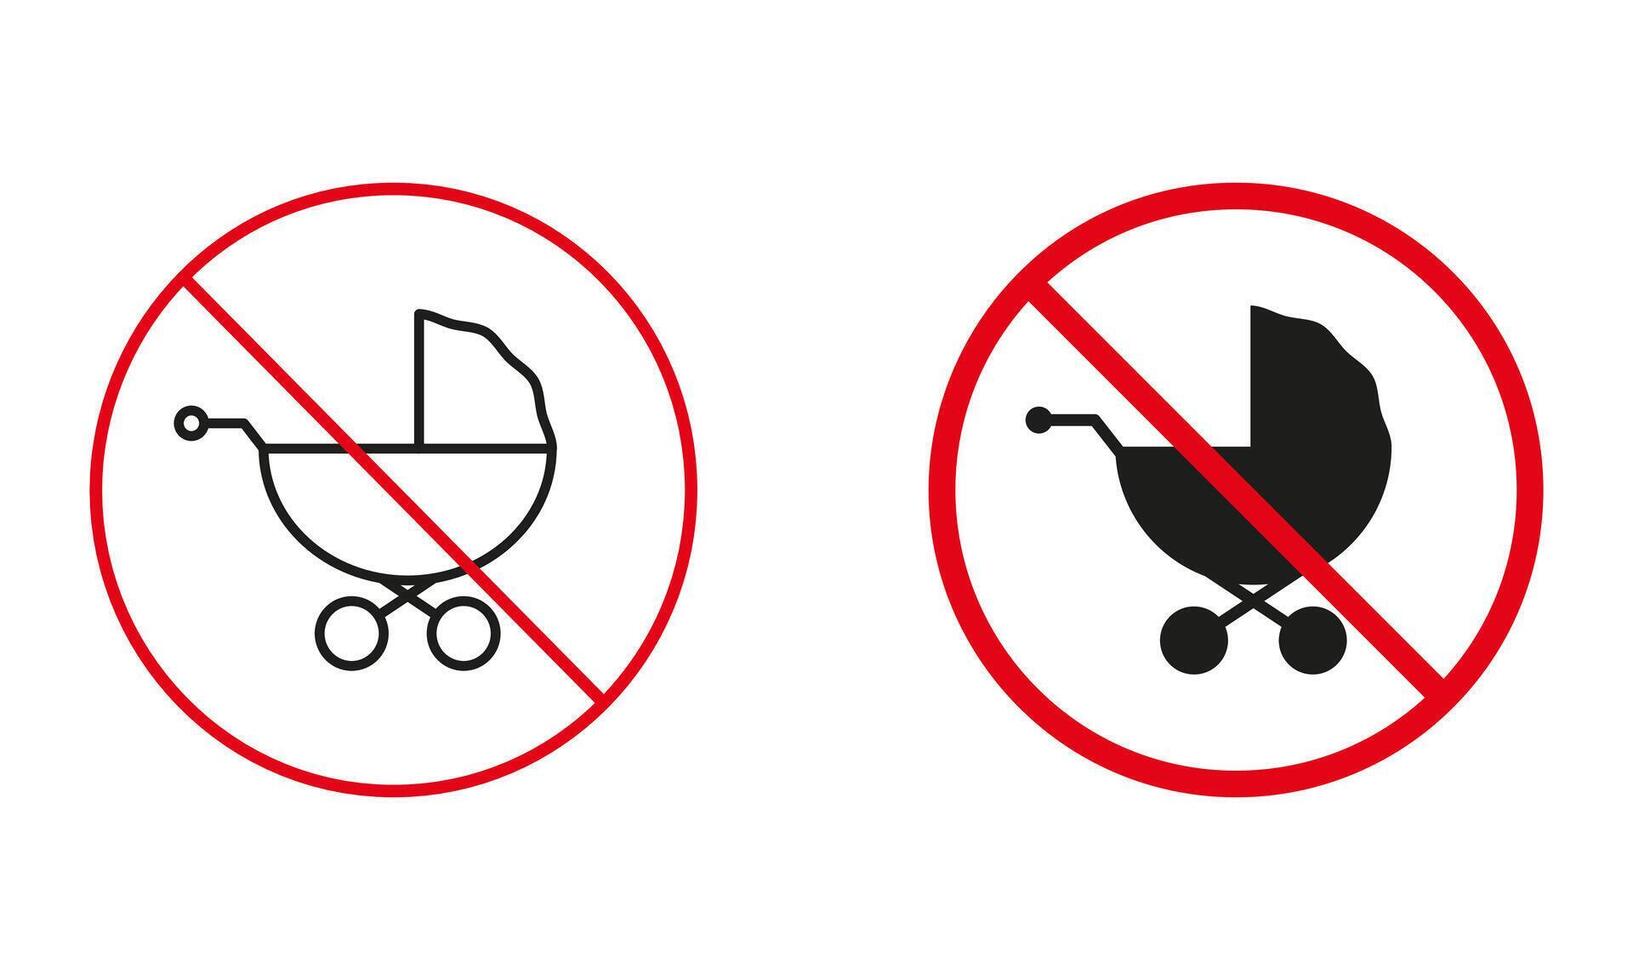 baby vervoer niet toegestaan, kinderwagen waarschuwing teken set. pasgeboren kinderwagen verboden symbool. verbieden baby wandelwagen lijn en silhouet pictogrammen. geïsoleerd vector illustratie